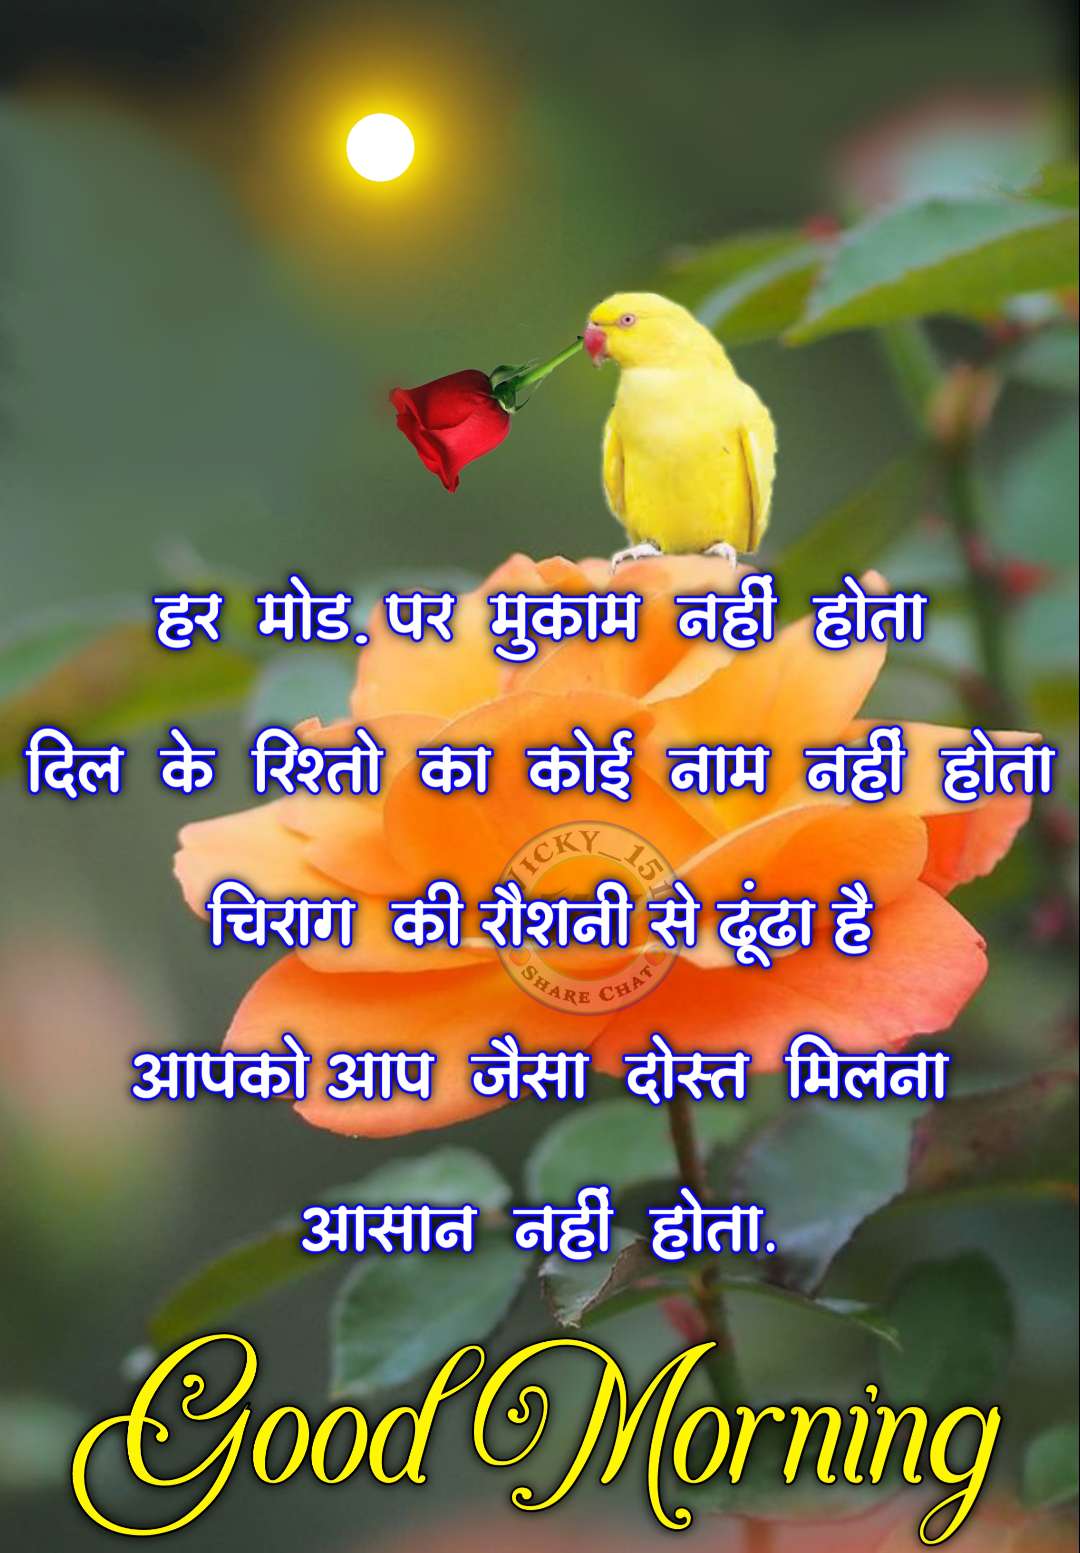 Good Morning Images Hindi And English ()